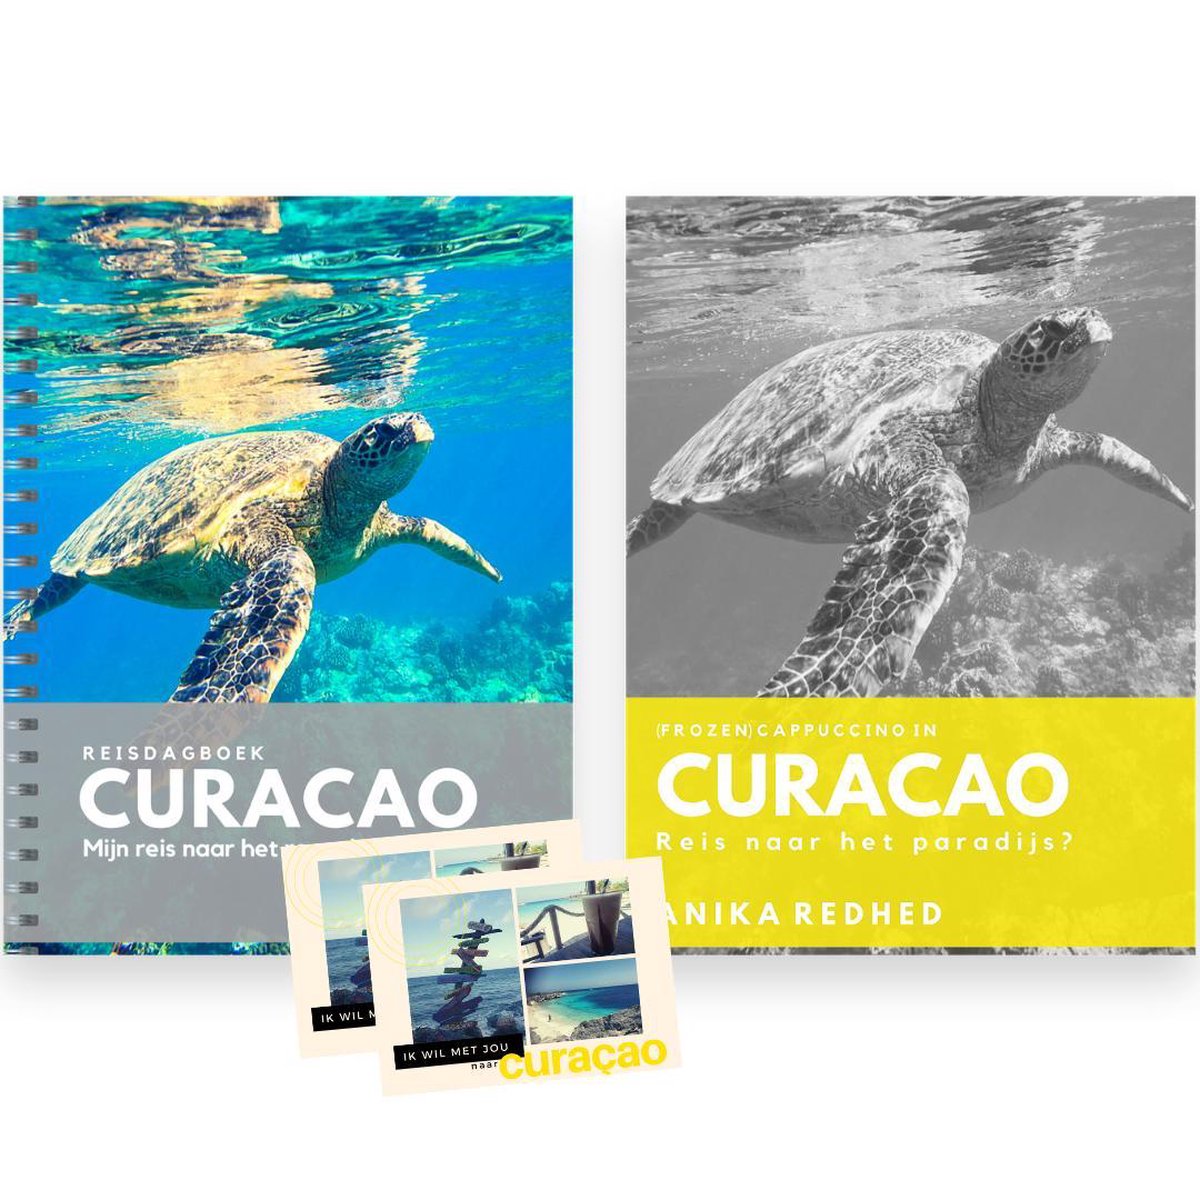 Curaçao HET cadeau: Reisboek Curaçao en Reisdagboek Curaçao / vakantiepakket